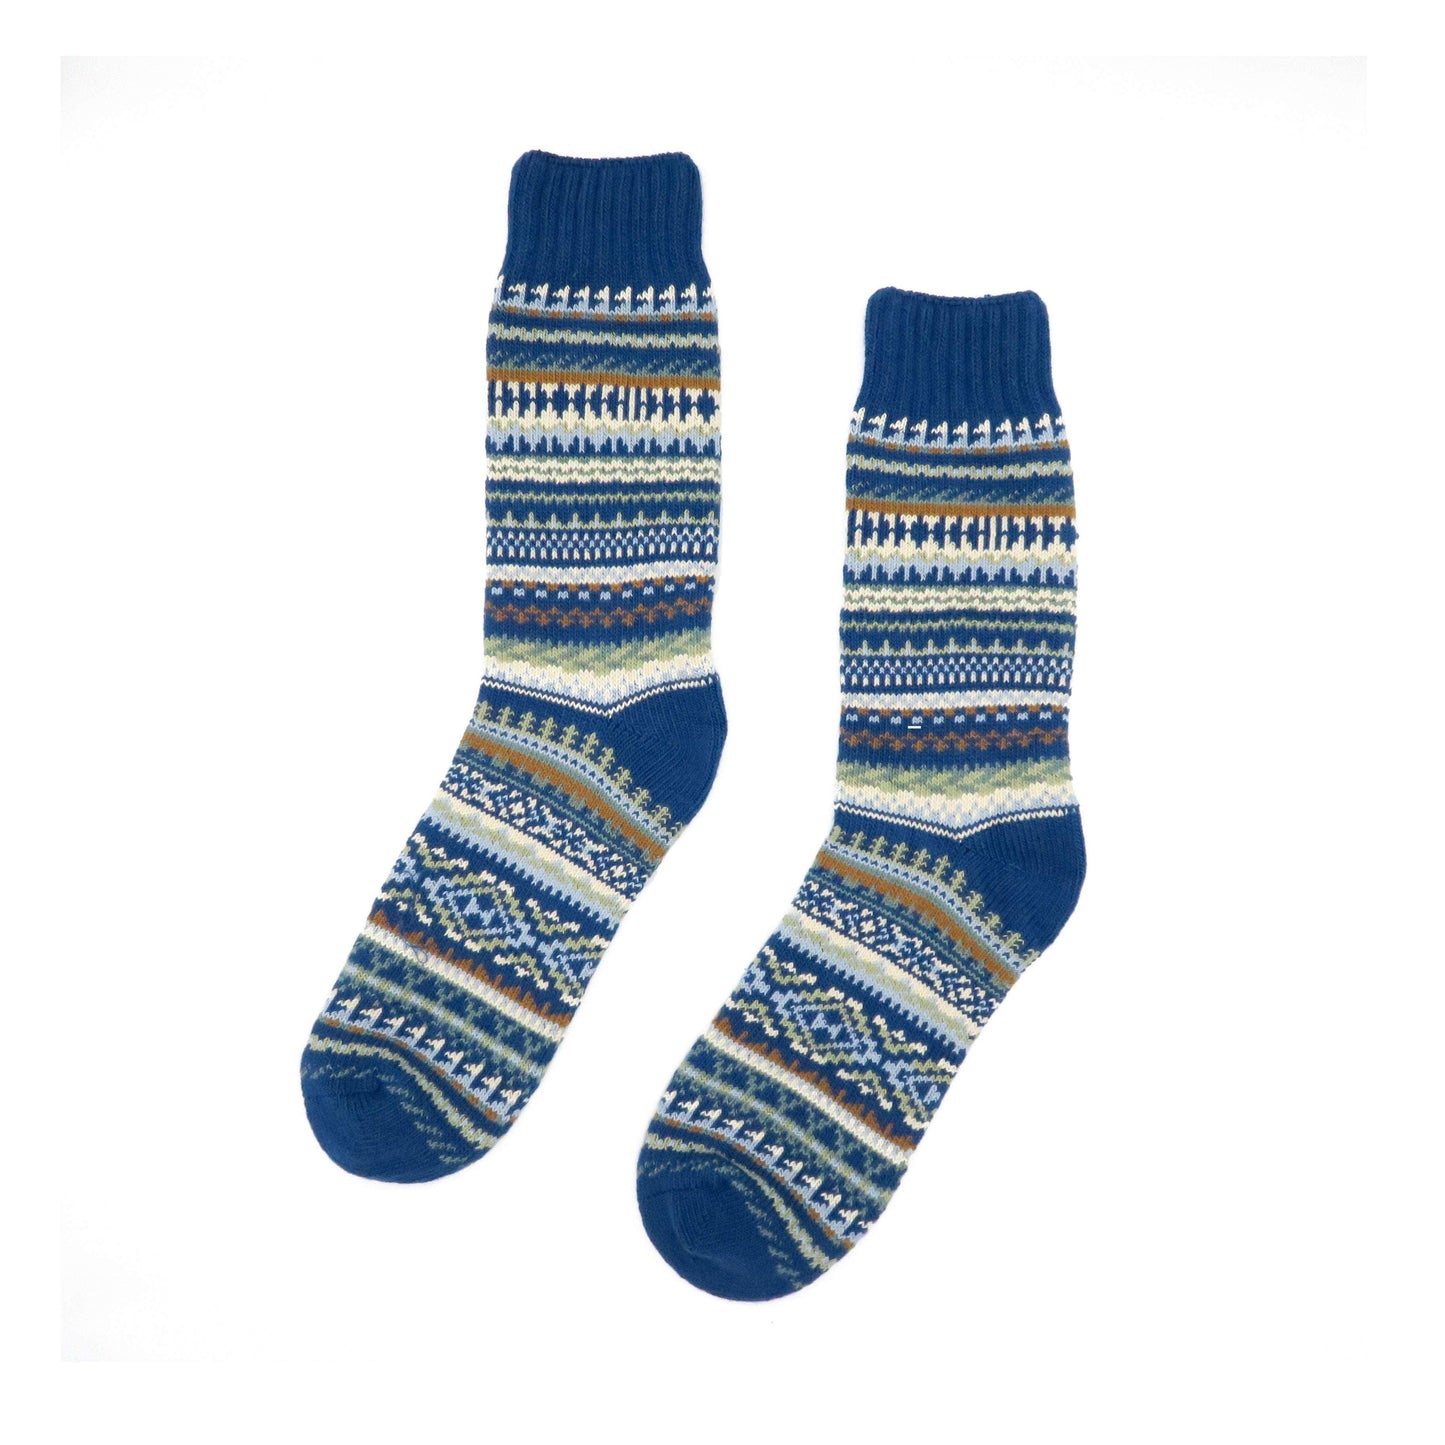 kuki blue - tribal stripe pattern socks